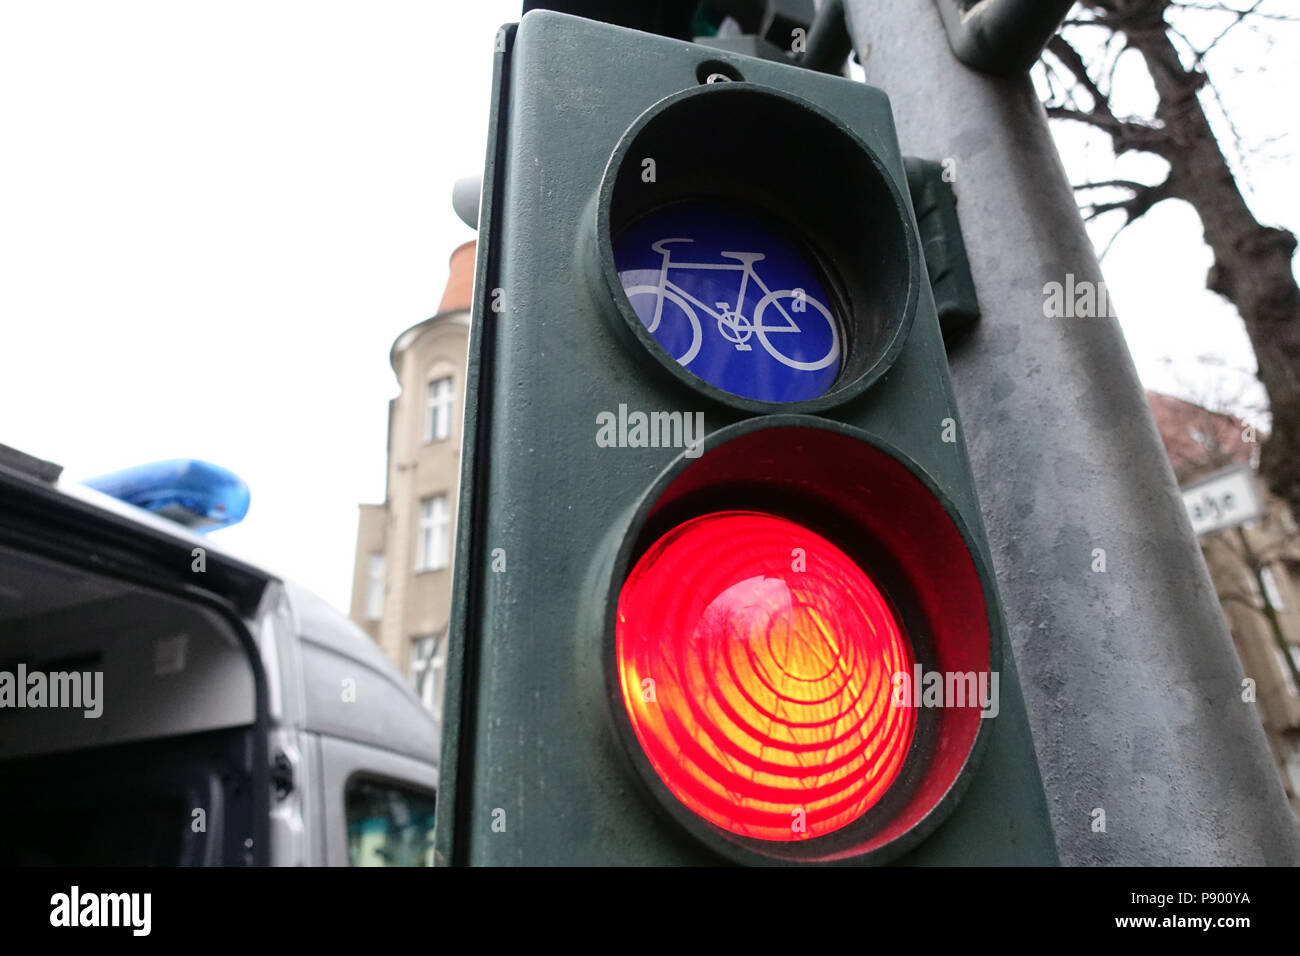 Berlín, Alemania, en bicicleta el semáforo está en rojo Foto de stock